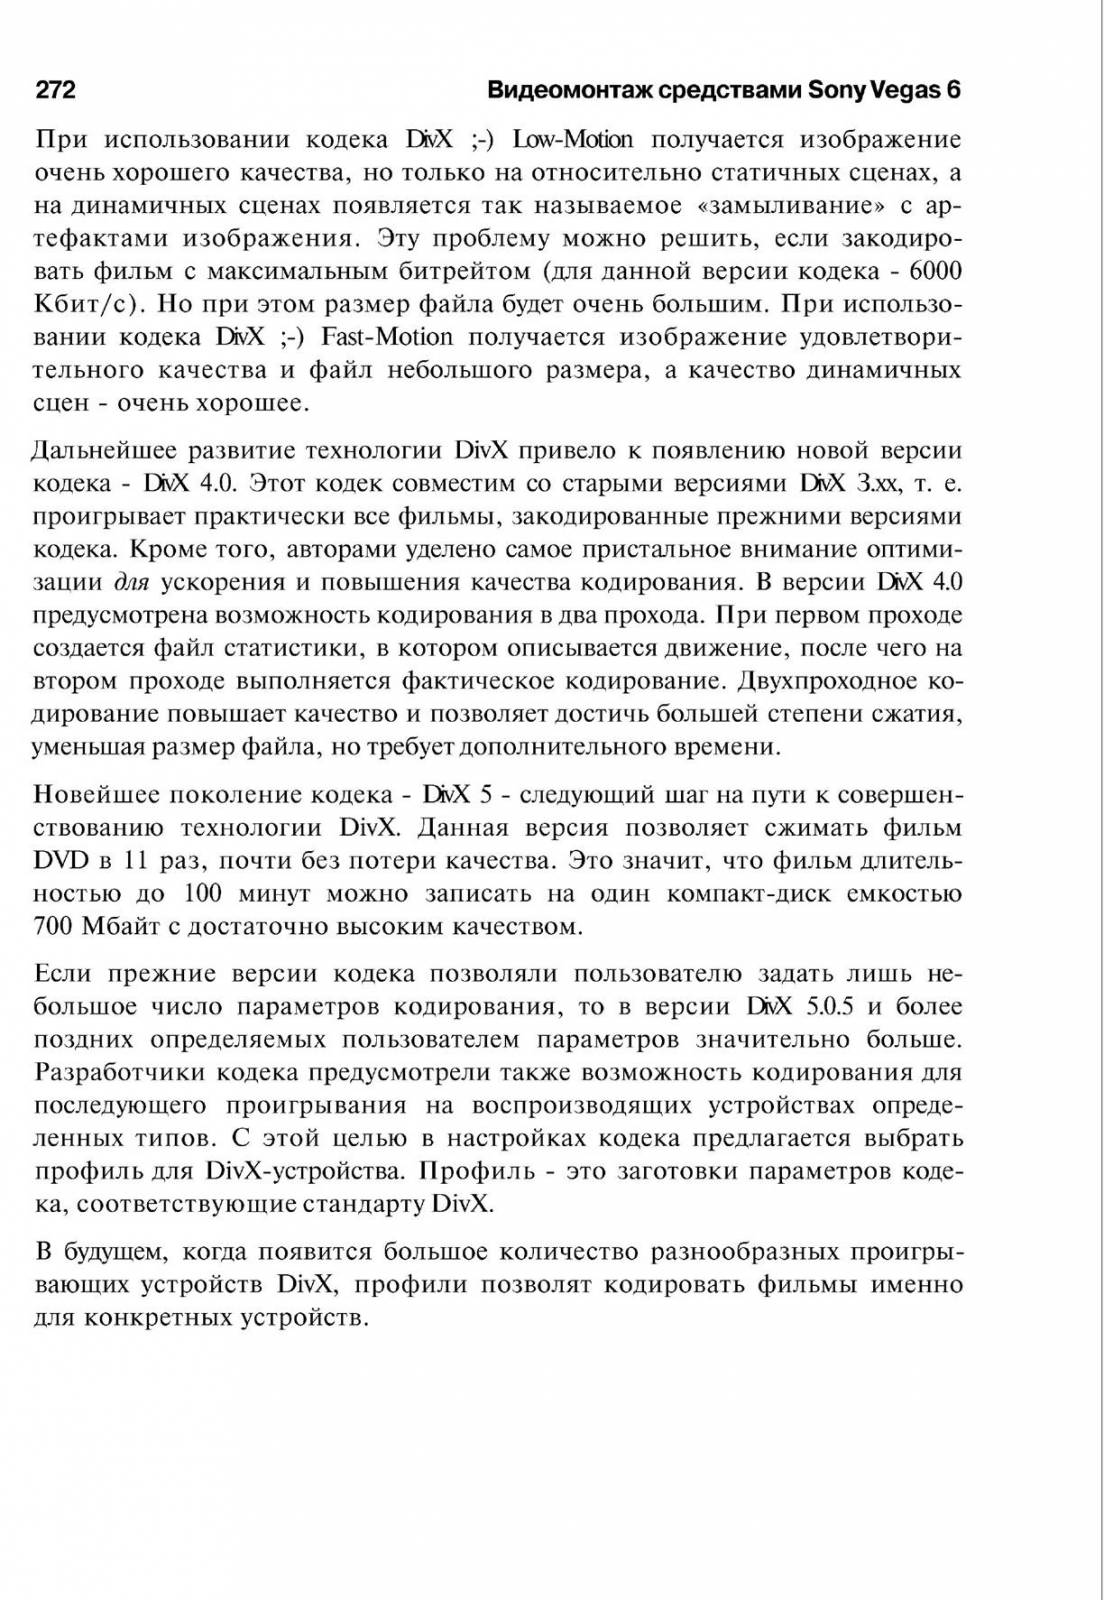 http://redaktori-uroki.3dn.ru/_ph/14/360110262.jpg